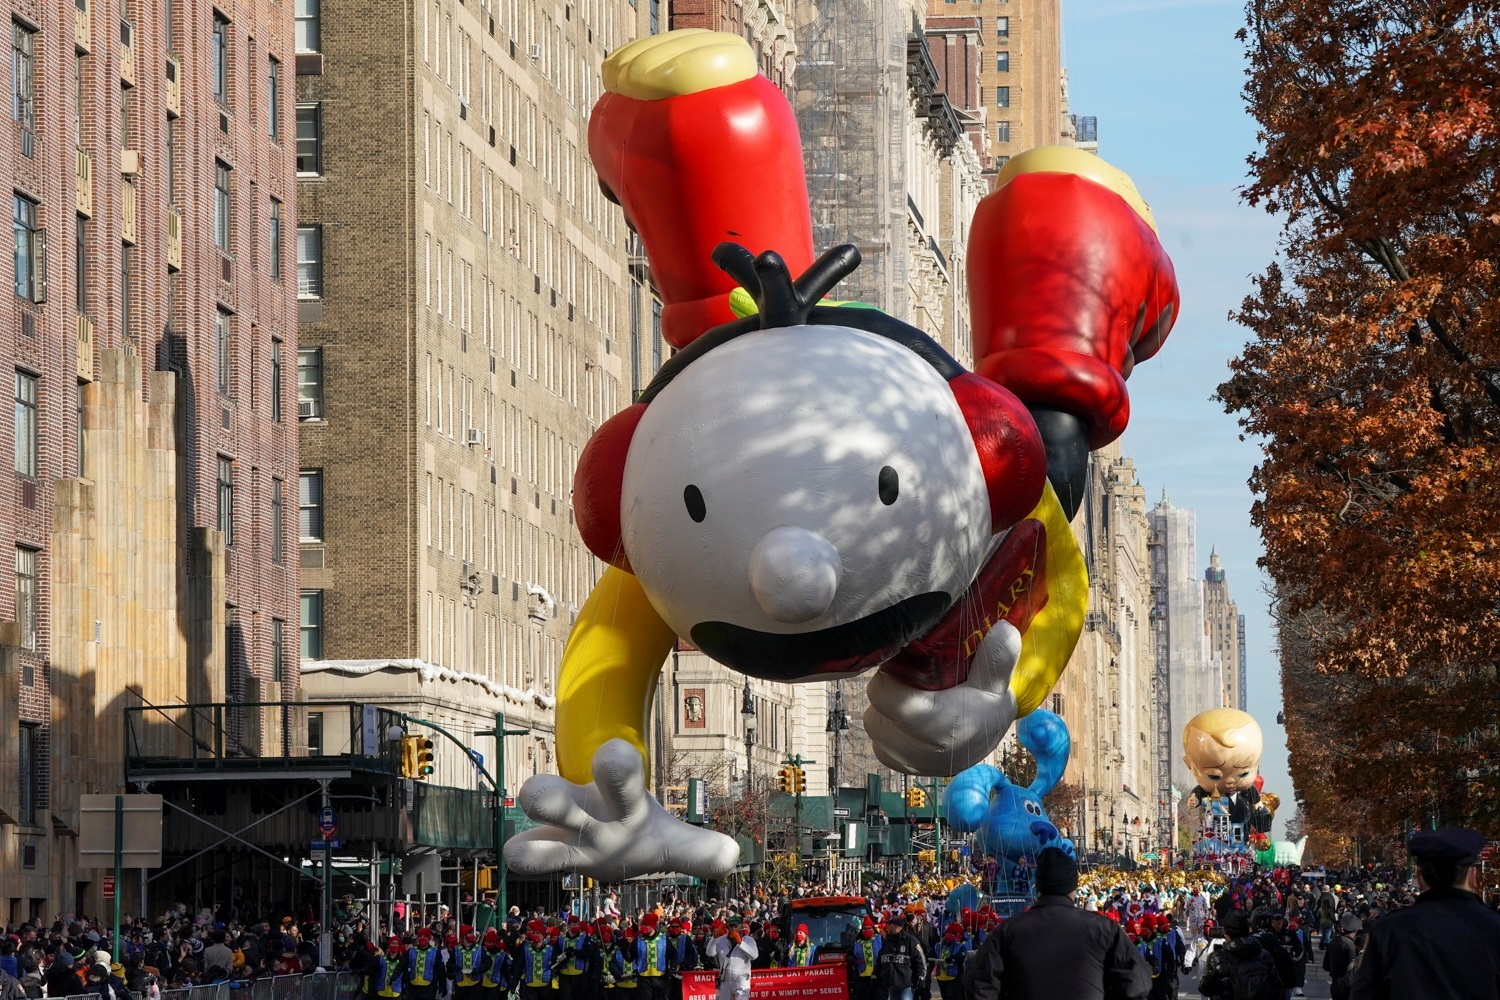 FOTOS) Los globos gigantes del desfile de Macy's regresaron a las calles de Nueva York en día de Acción de Gracias | Cultura | Entretenimiento El Universo